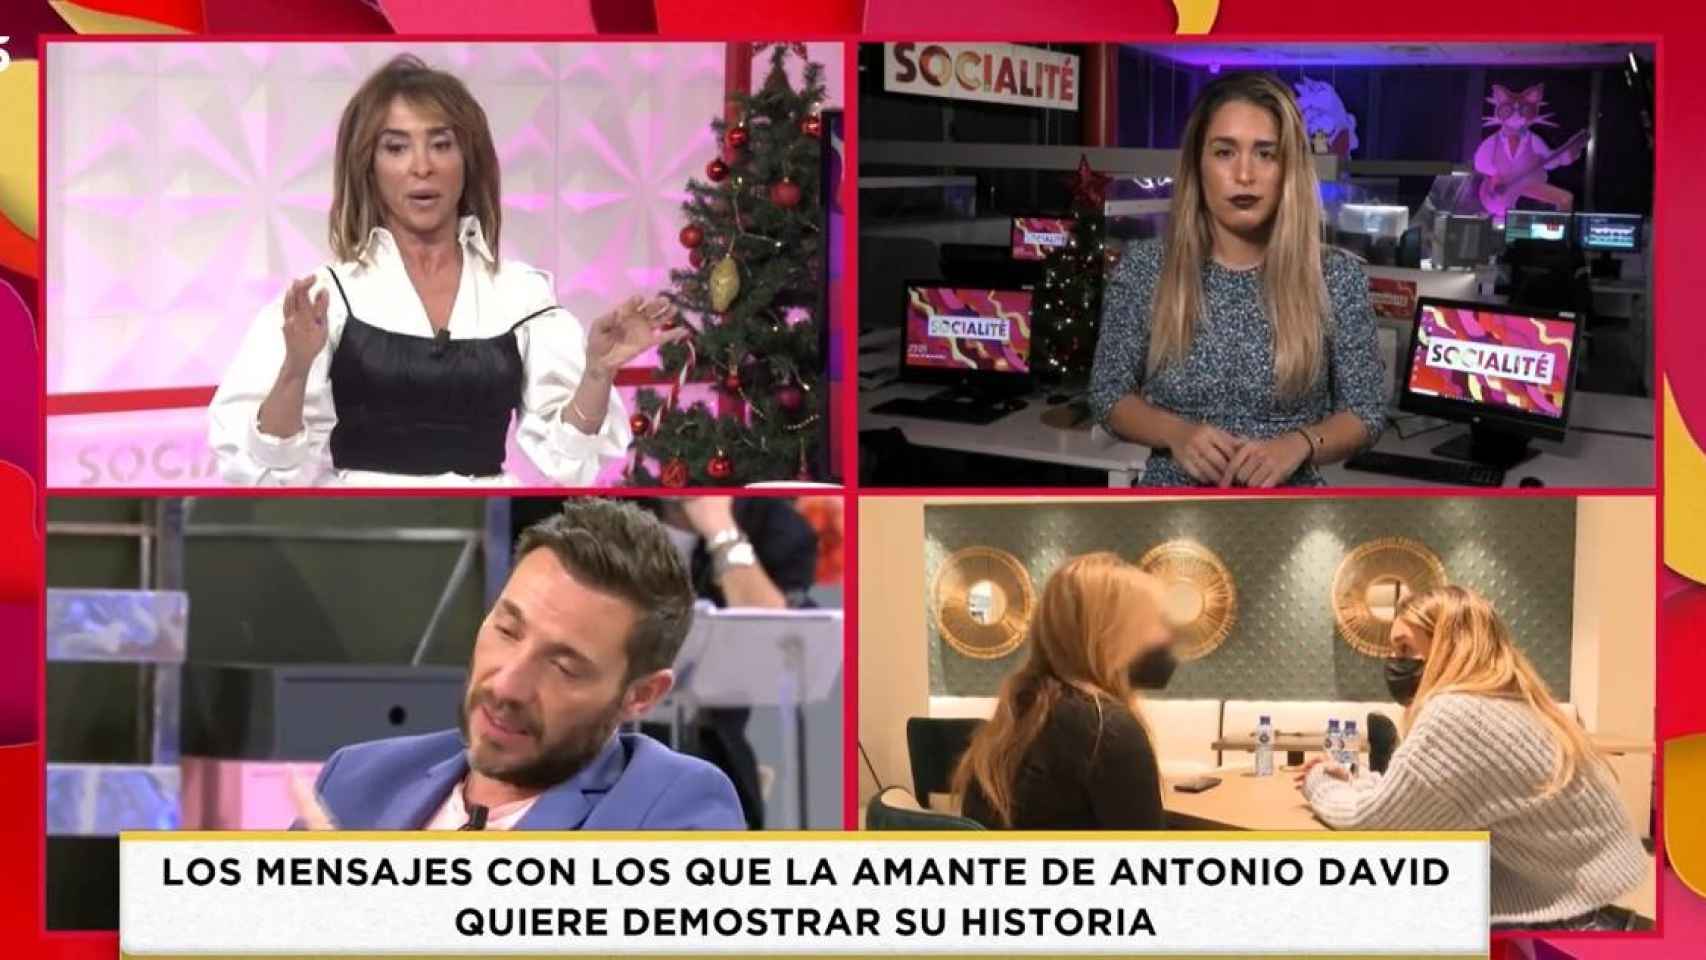 La amante de Antoniodá con María Patiño /TELECINCO